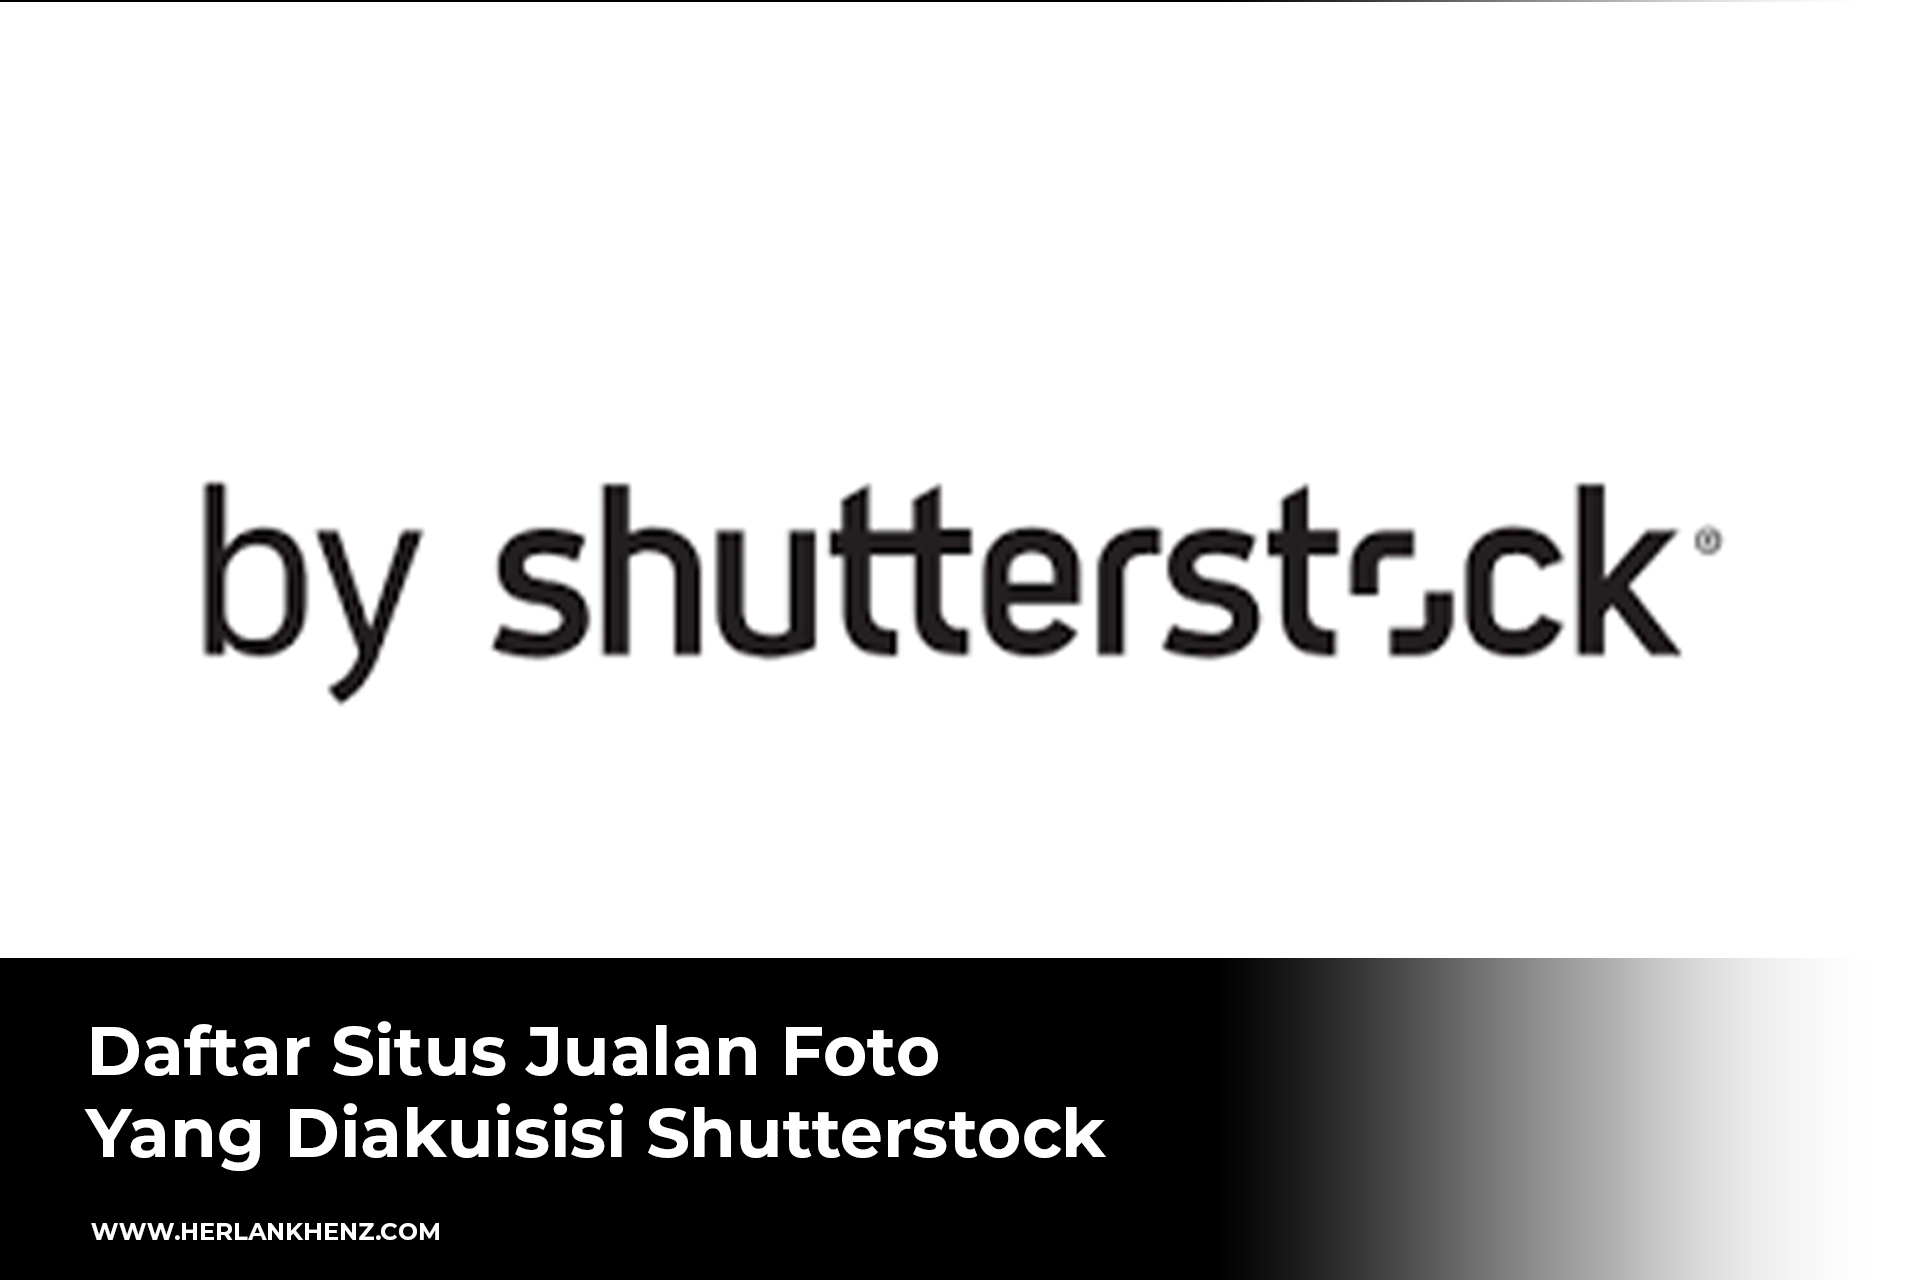 Lista de sitios de venta de fotografías adquiridos por Shutterstock